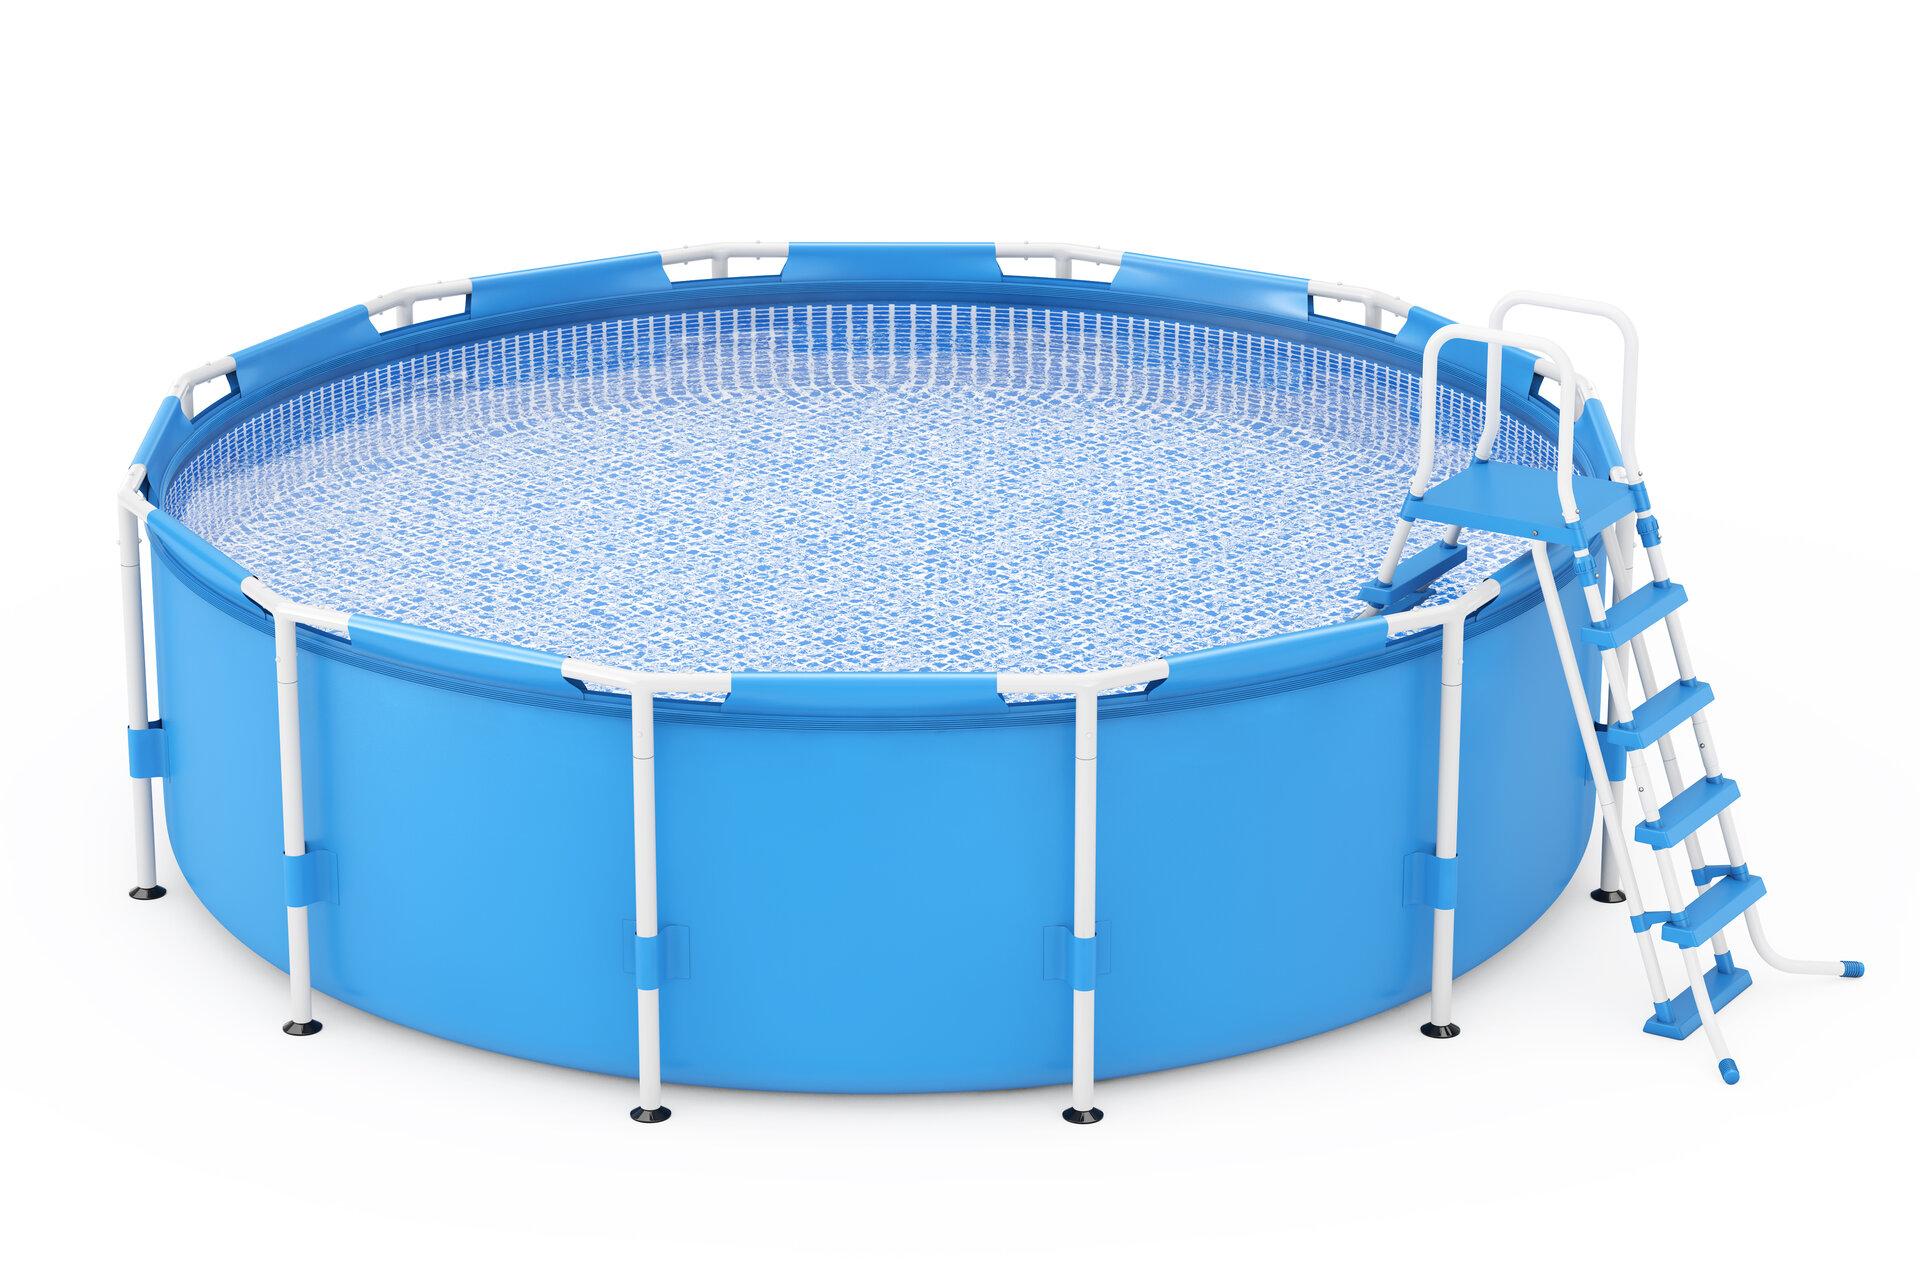 Blauer, runder Stahlwand Swimmingpool, im Freien mit Leiter auf einem weißen Hintergrund